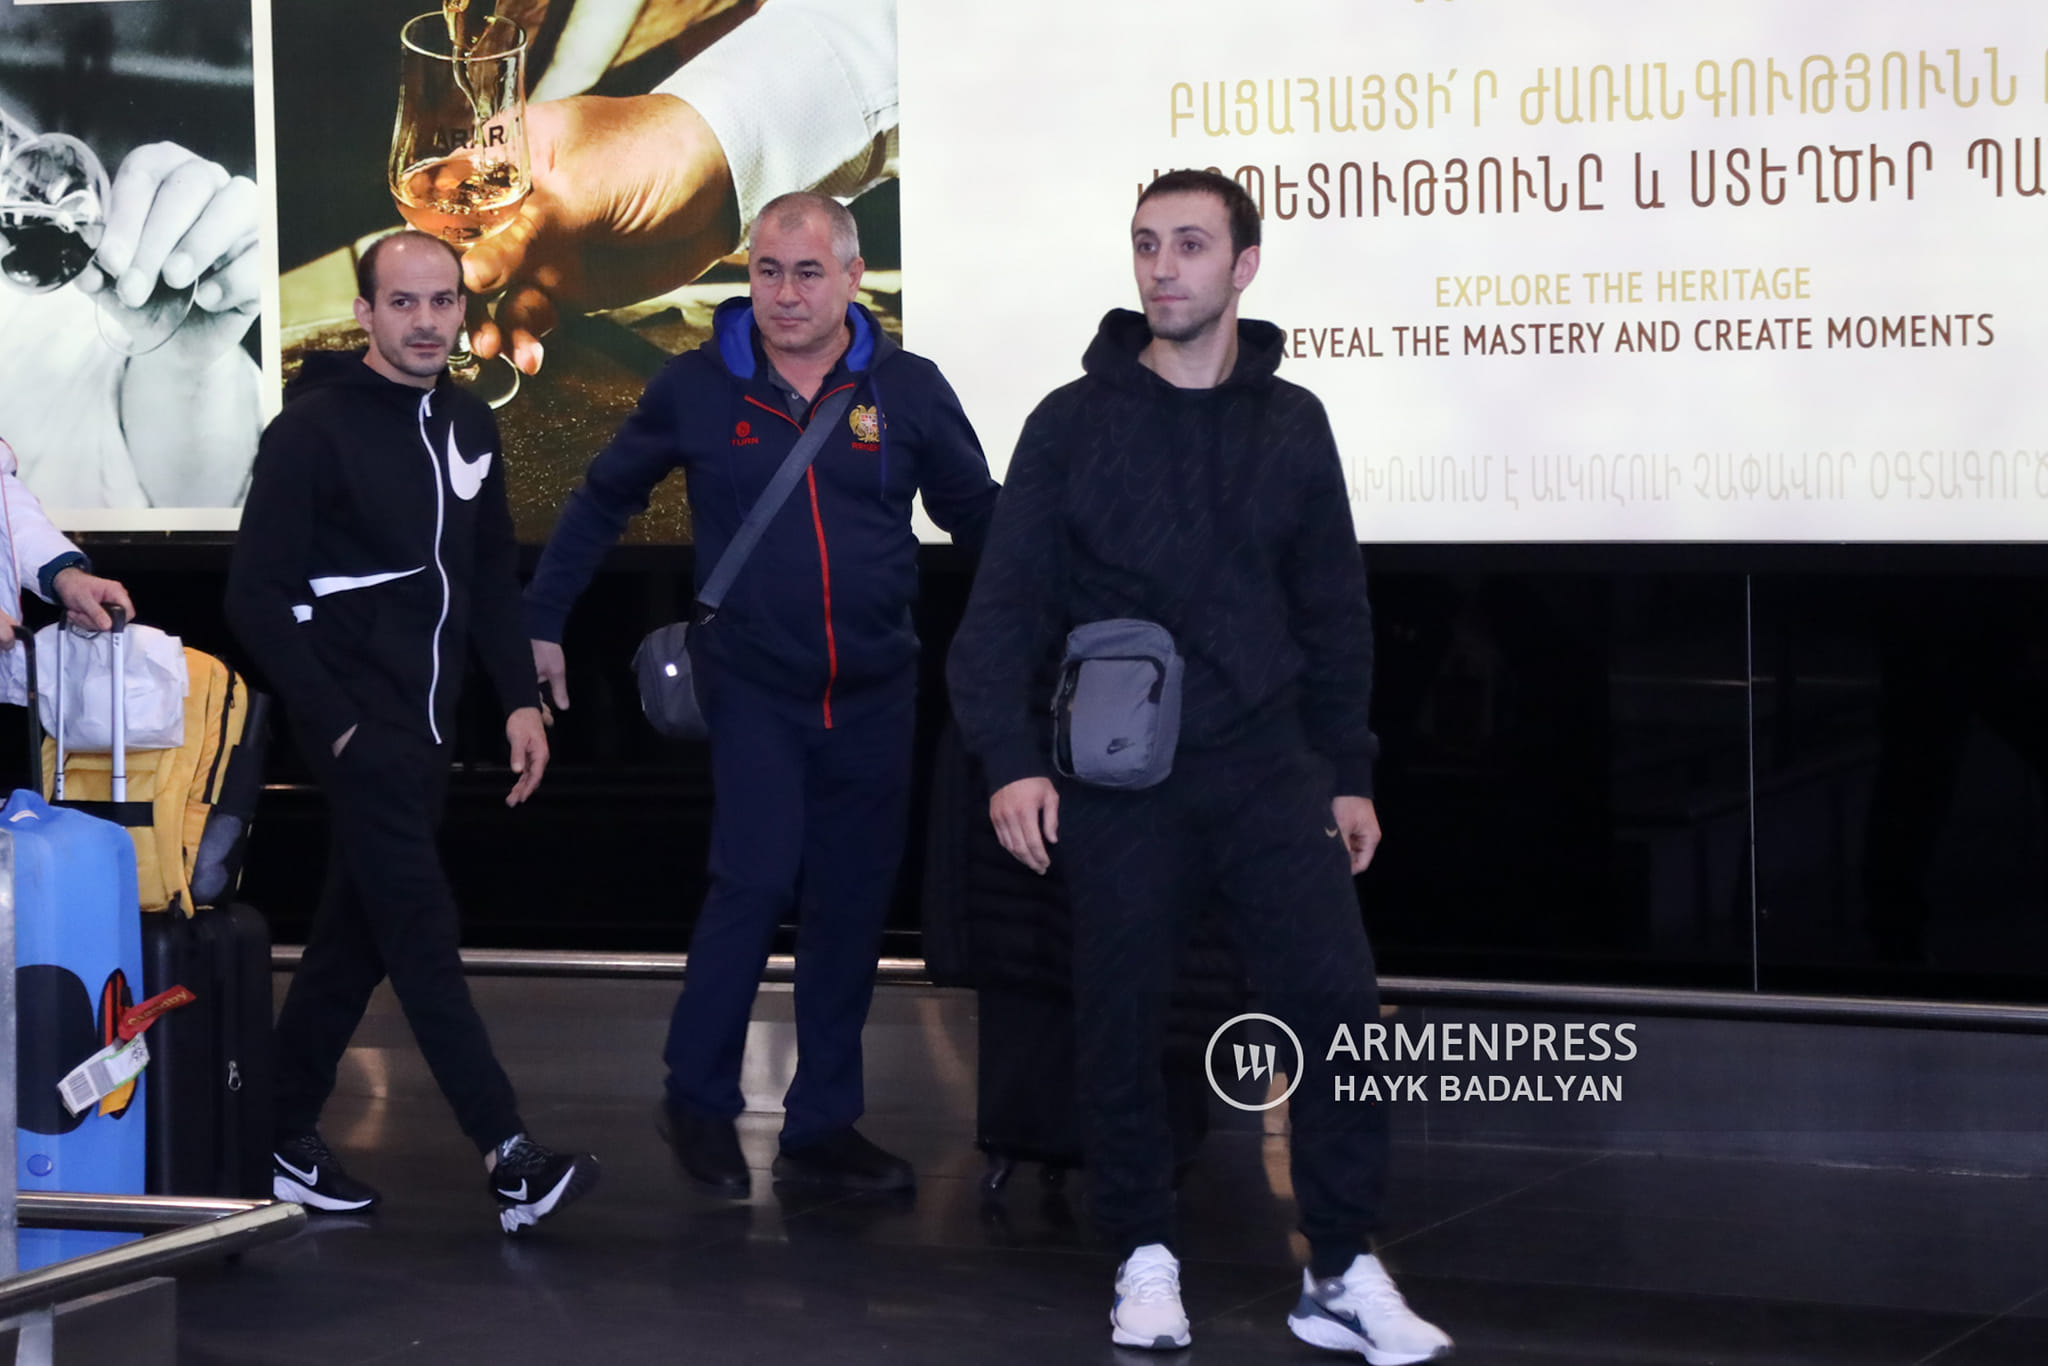 Արթուր Դավթյանին և Հարություն Մերդինյանին  «Զվարթնոցում» զուռնա-դհոլով դիմավորեցին․ տեսանյութ